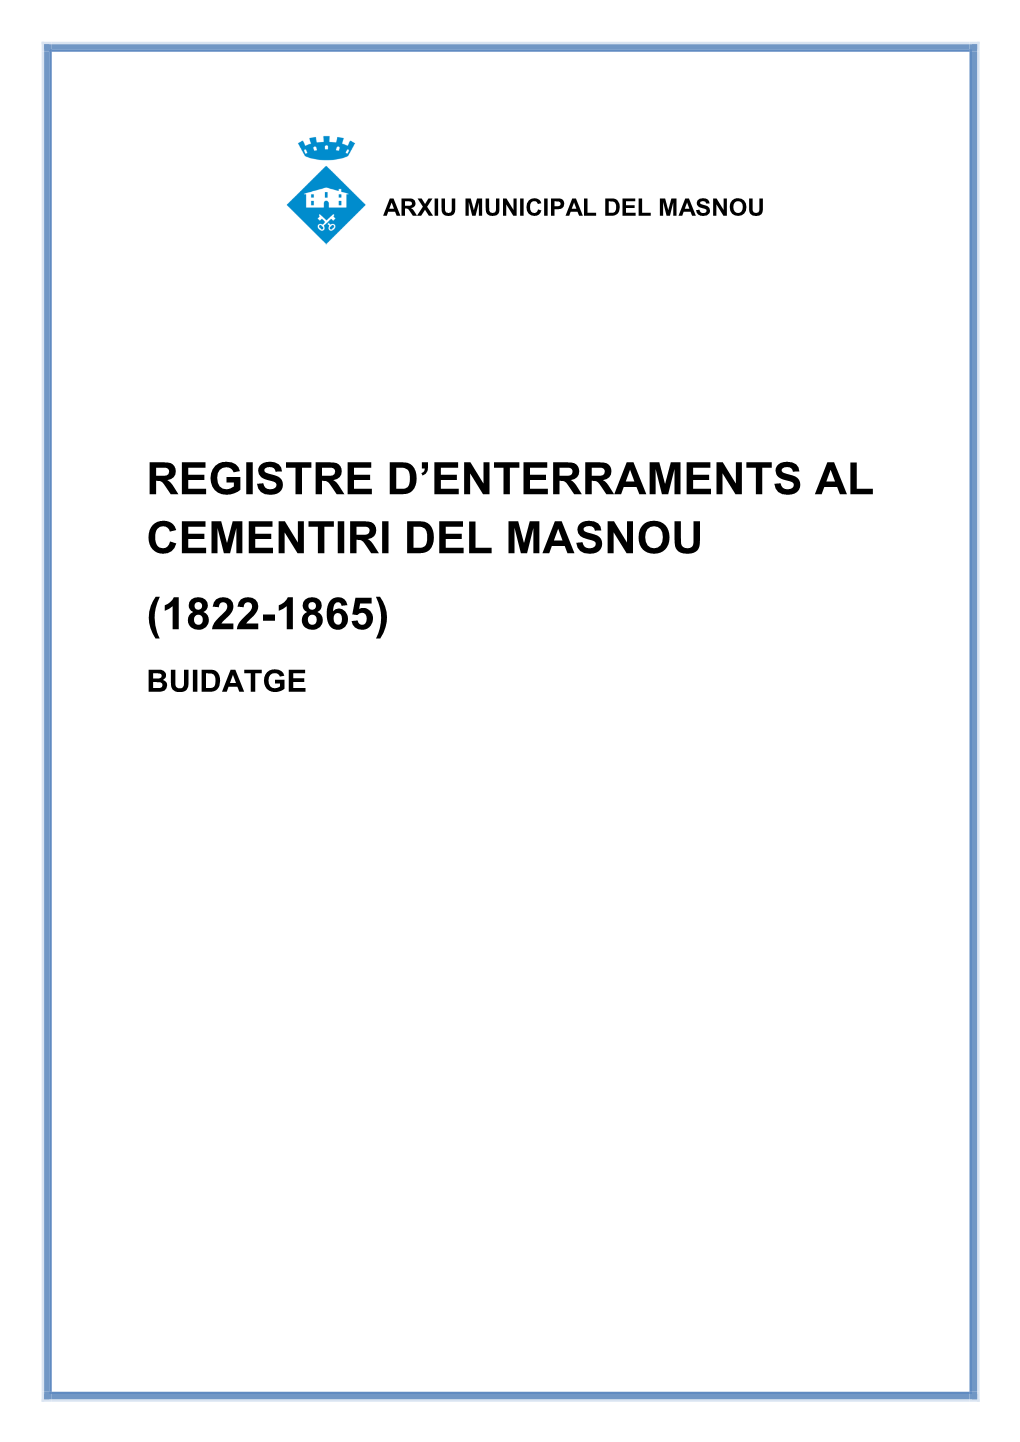 Registre D'enterraments Al Cementiri Del Masnou (1822